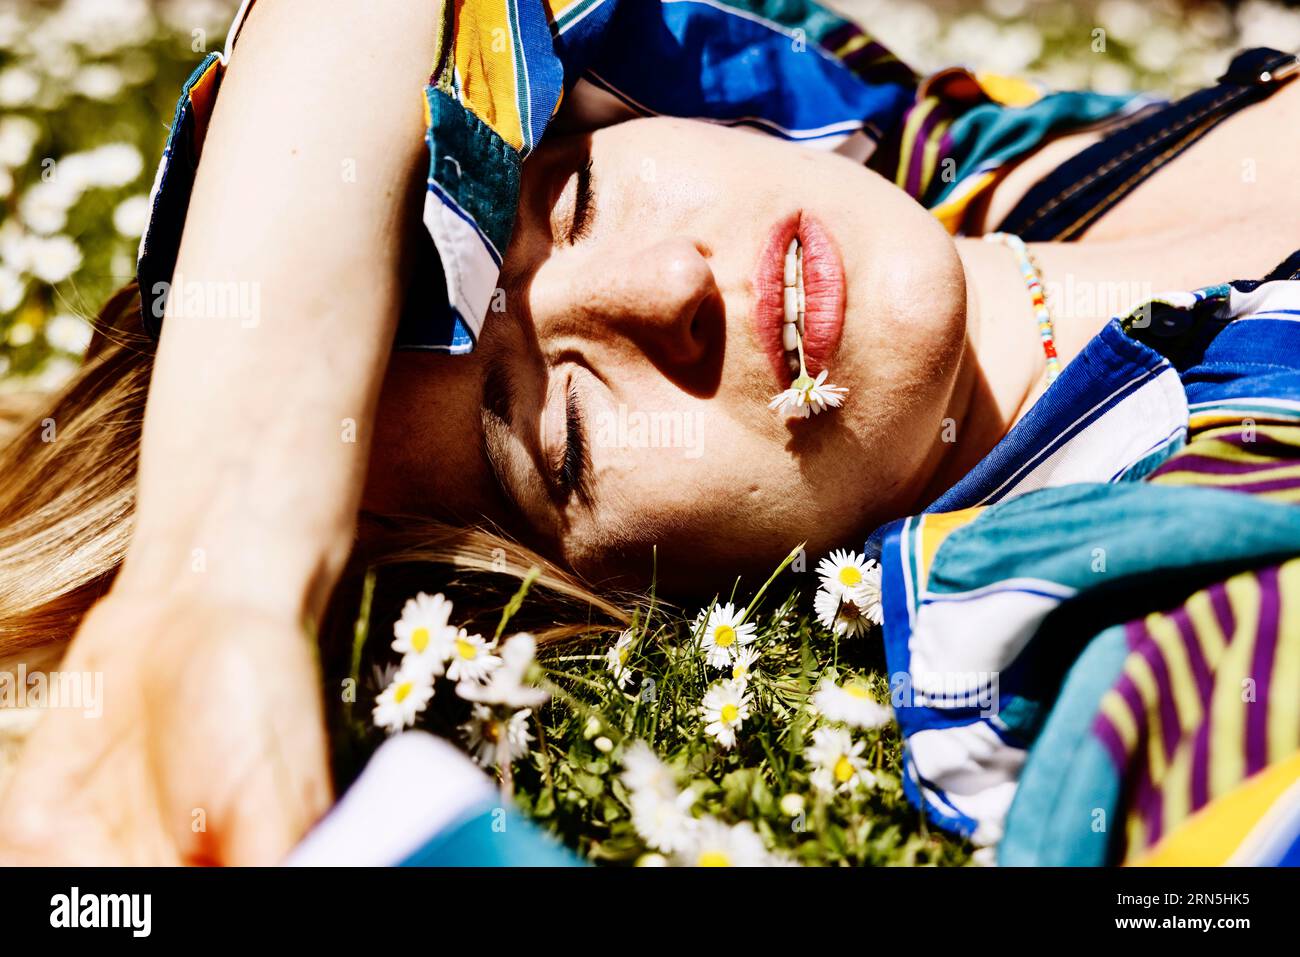 Hübsche junge Frau im Gras zwischen Gänseblümchen mit Gänseblümchen im Mund, Köln, Nordrhein-Westfalen, Deutschland, Wiese, gutes Wetter Stockfoto